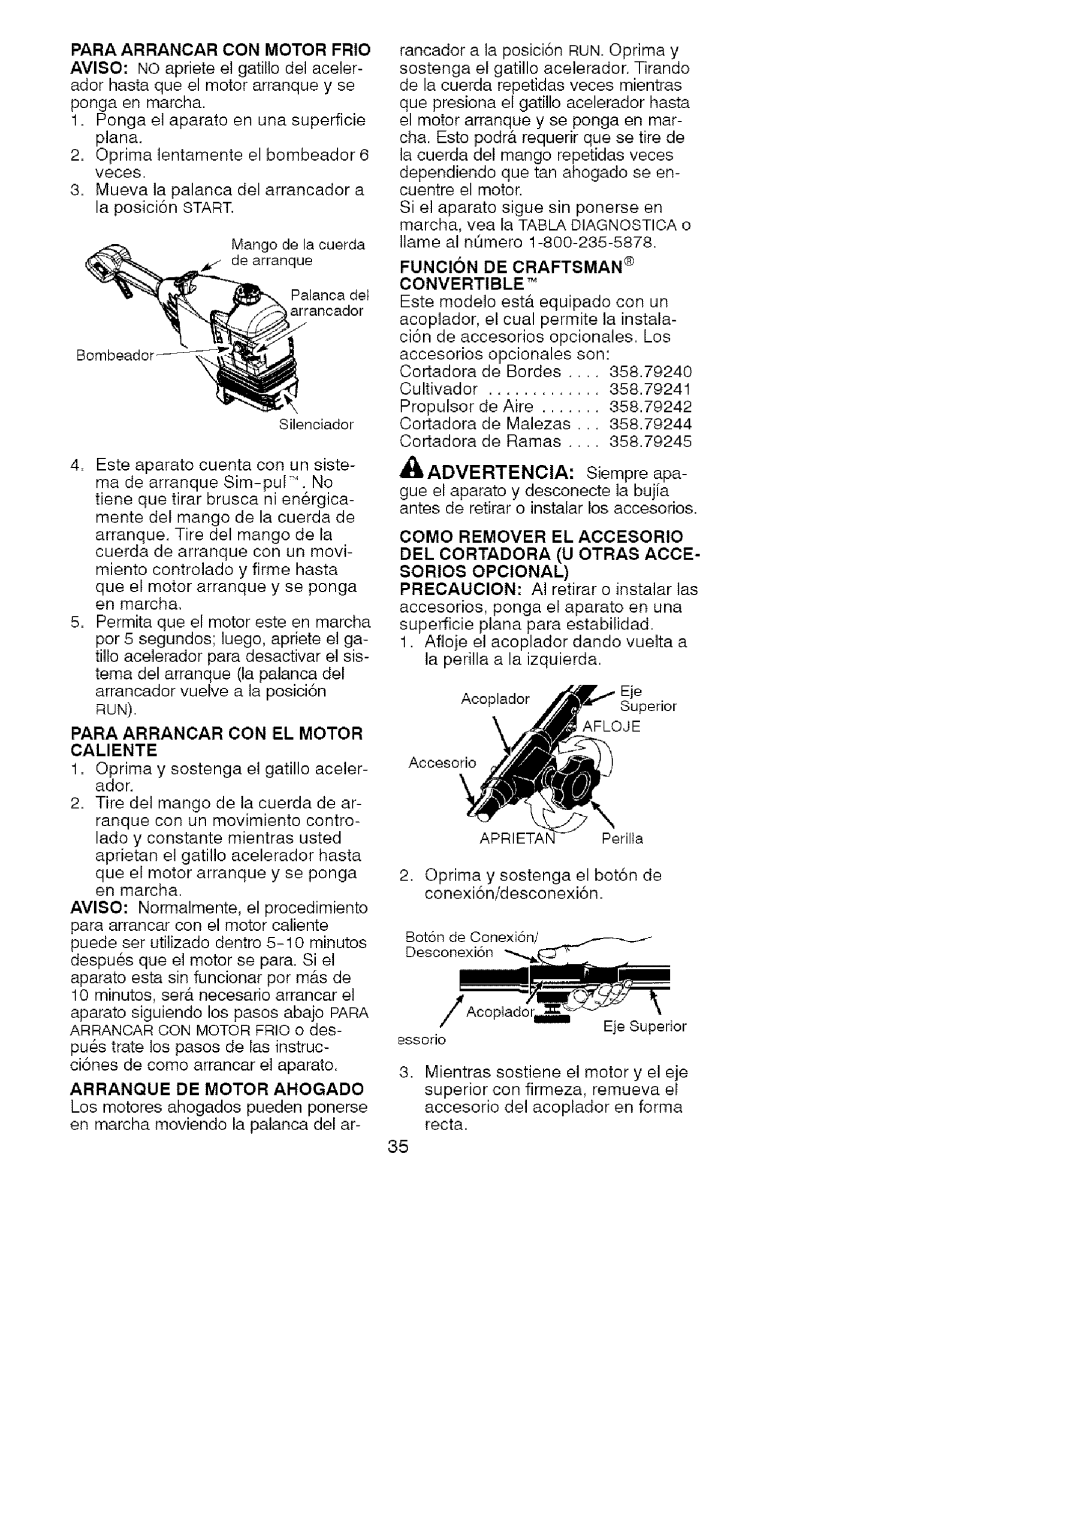 Craftsman 358.791072 manual Para Arrancar Con Motor Frio, Funcion De Craftsman Convertible 